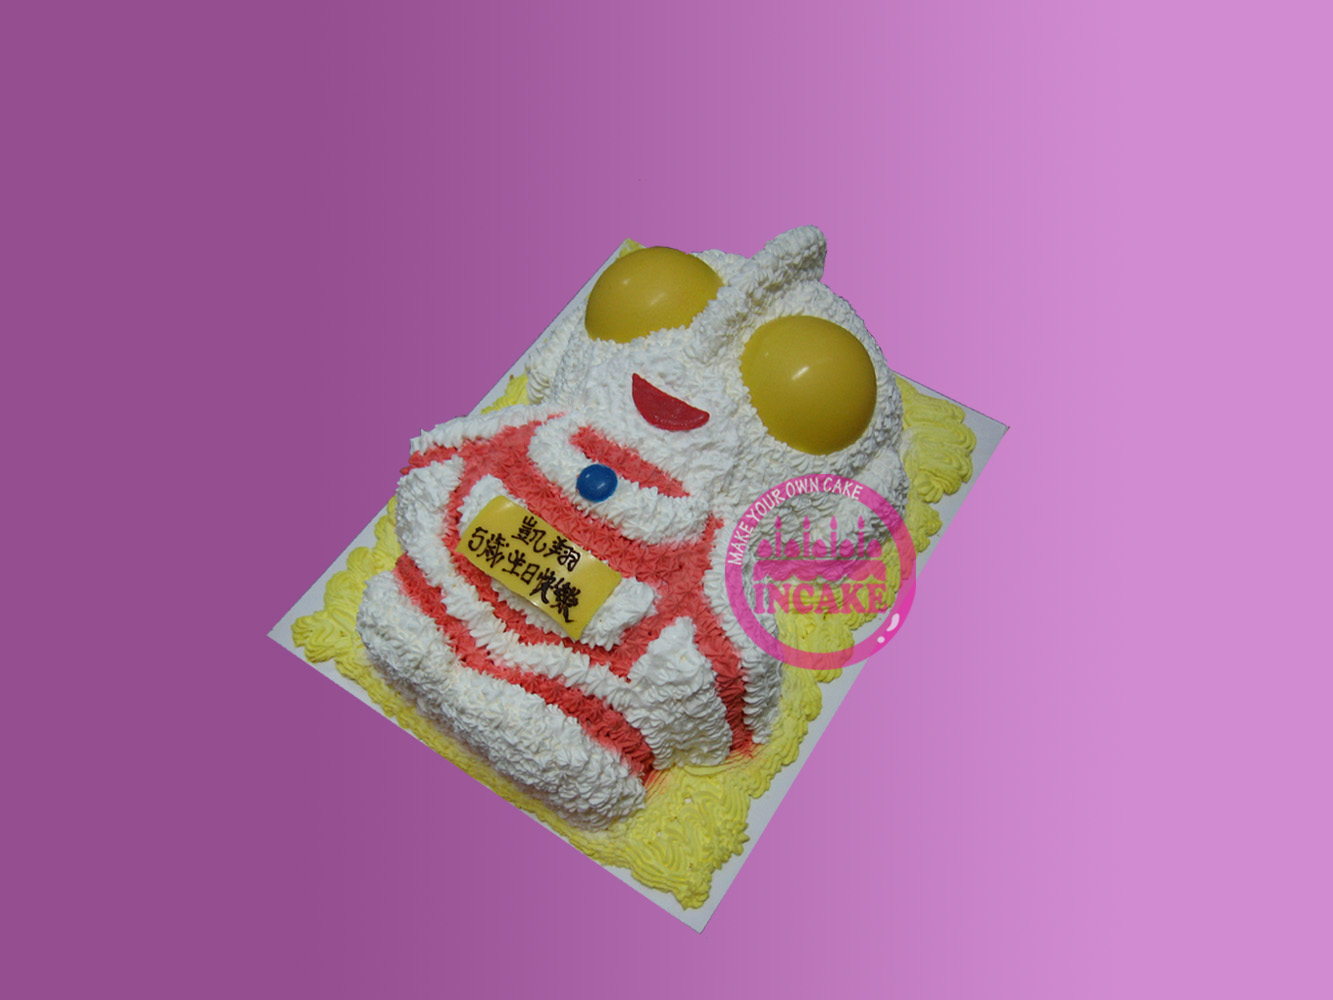 超人蛋糕 | InCake 3D立體蛋糕專門店 (3D cake shop) ~ Contact:62855321 (Whatsapp) 3d cake,訂3D蛋糕,立體蛋糕,訂生日蛋糕,訂蛋糕